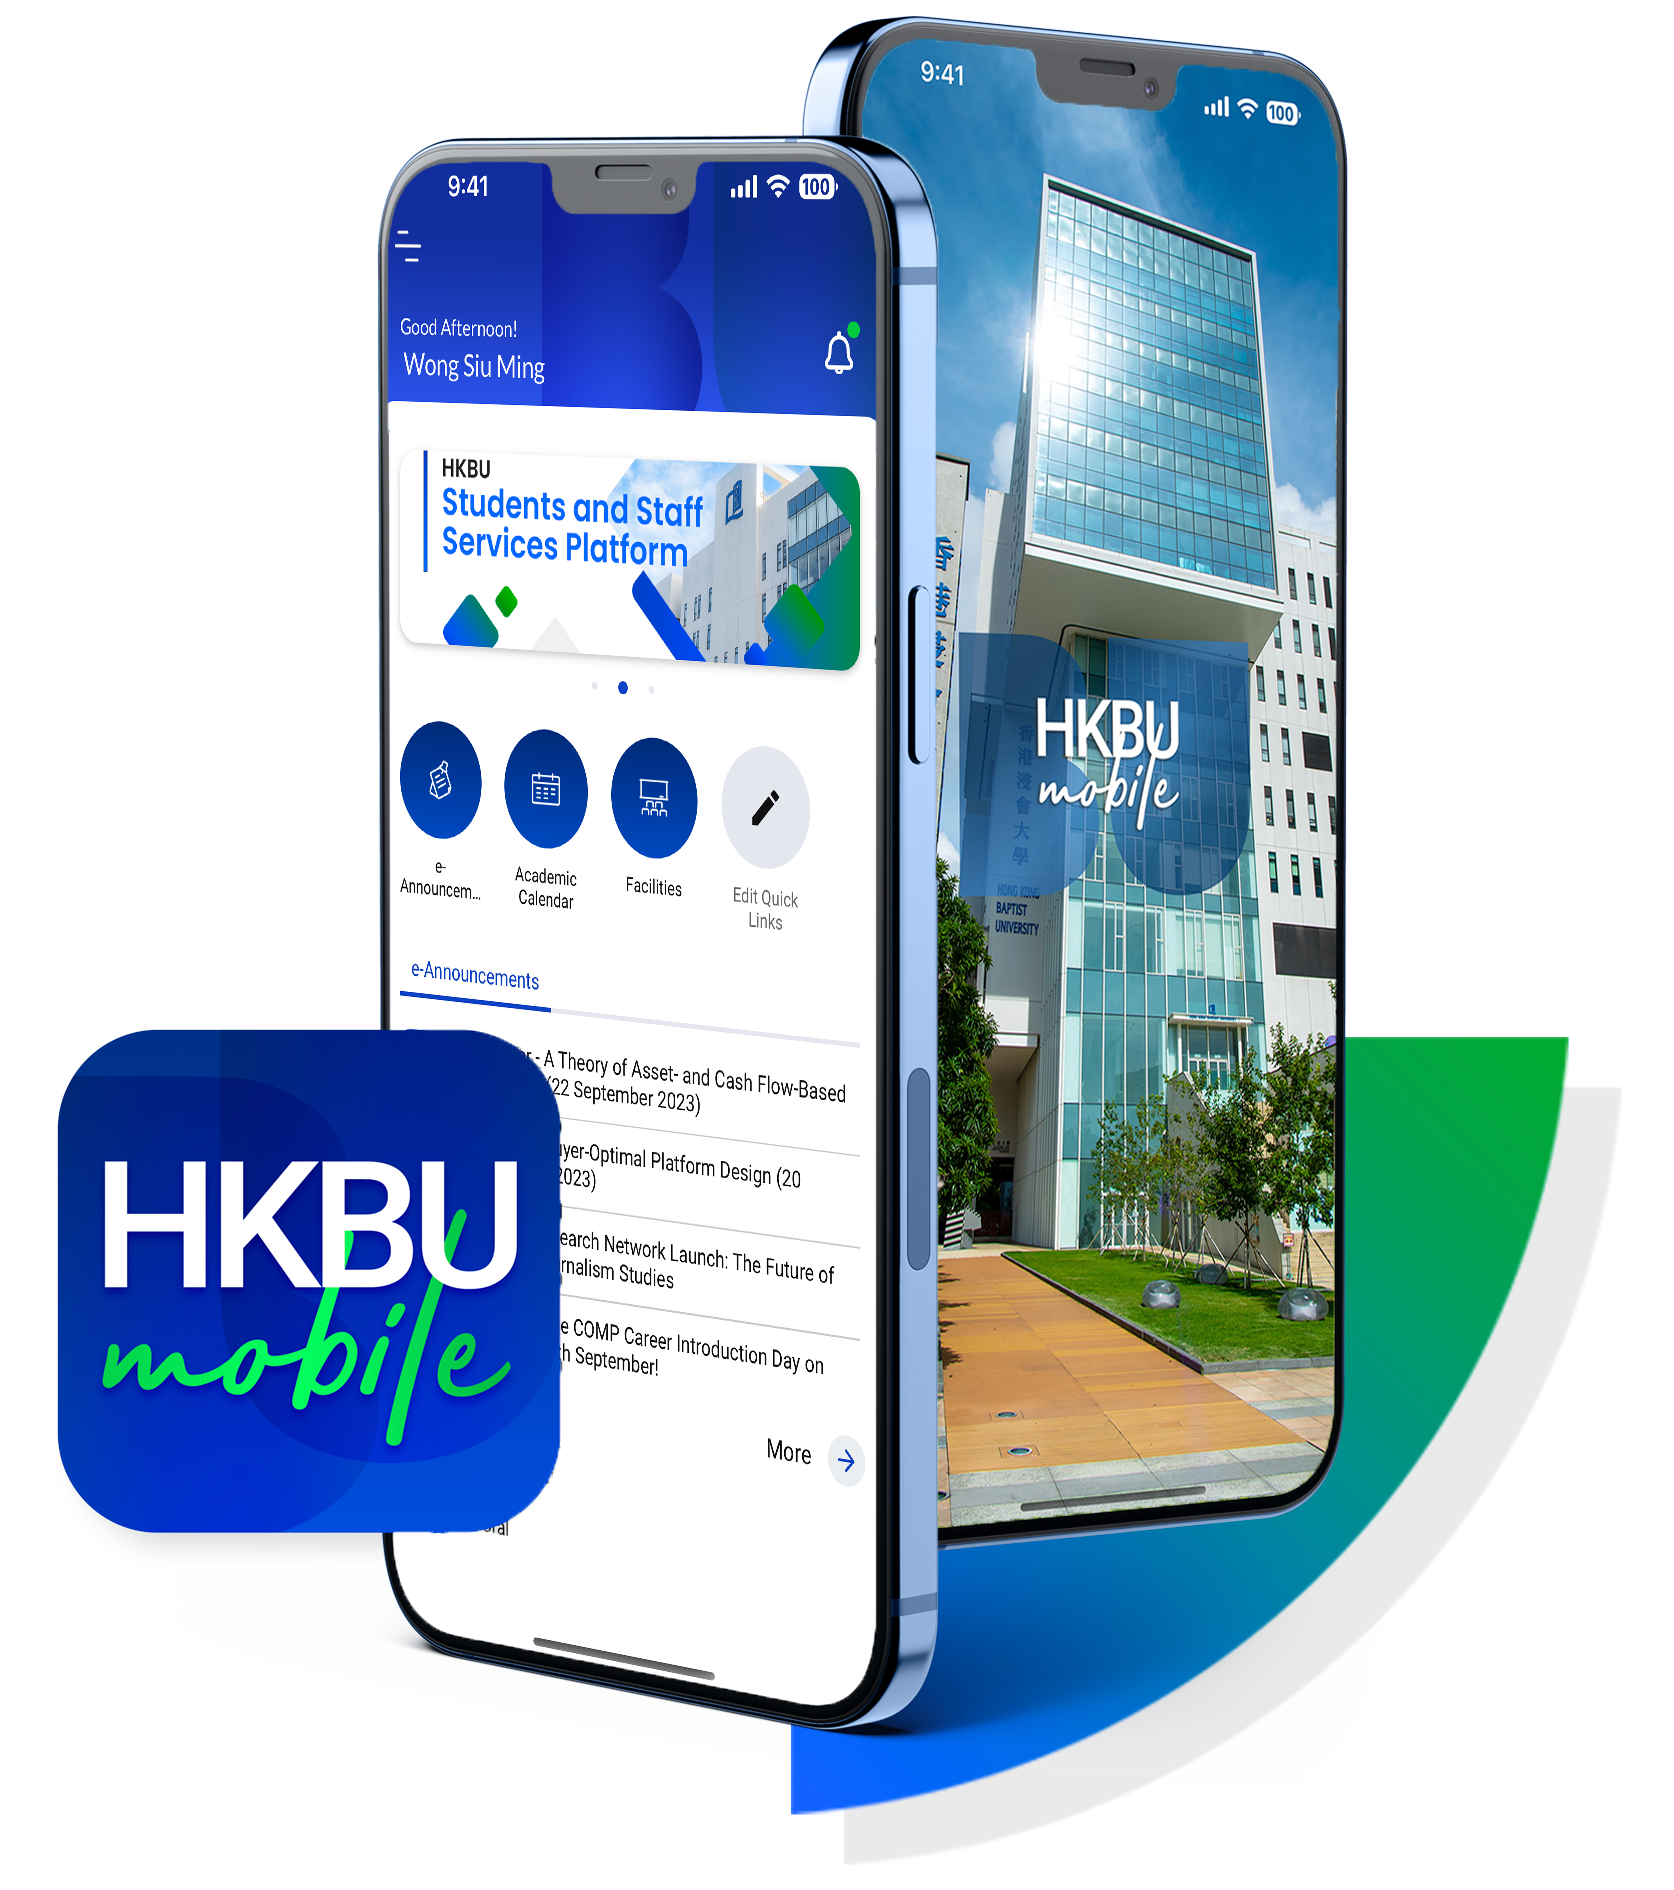 HKBU mobile